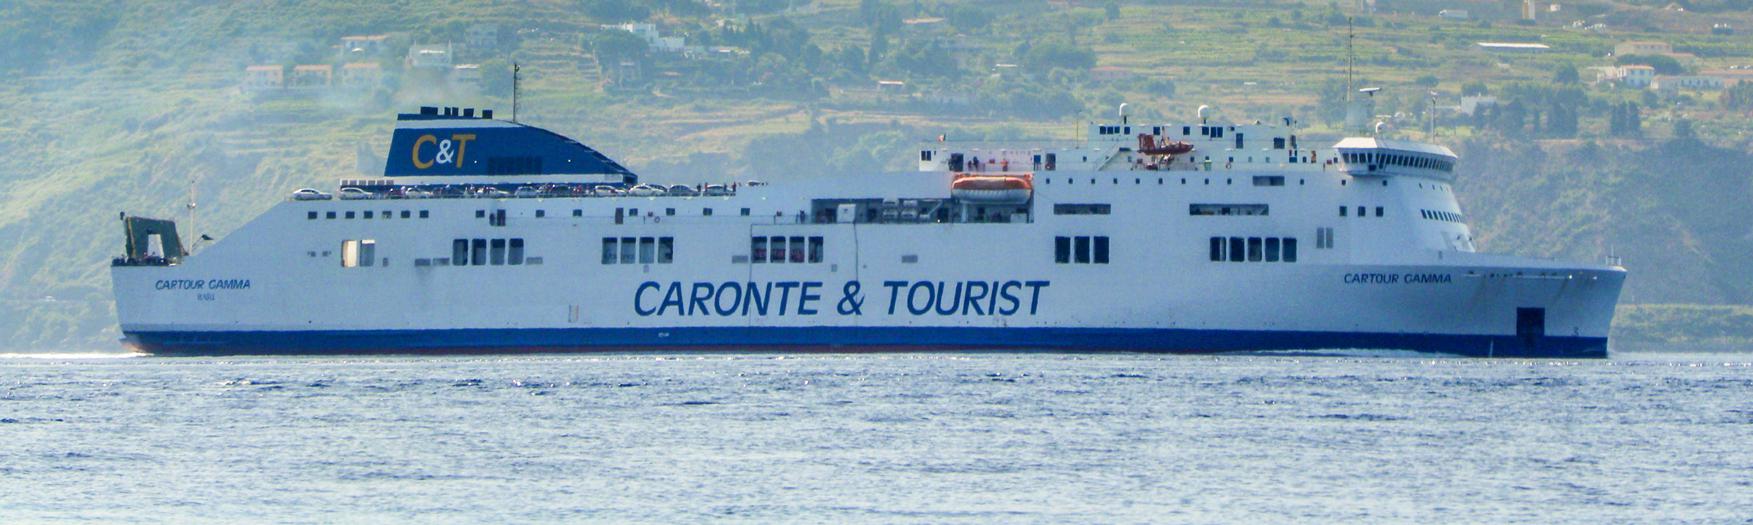 prezzi nave caronte tourist